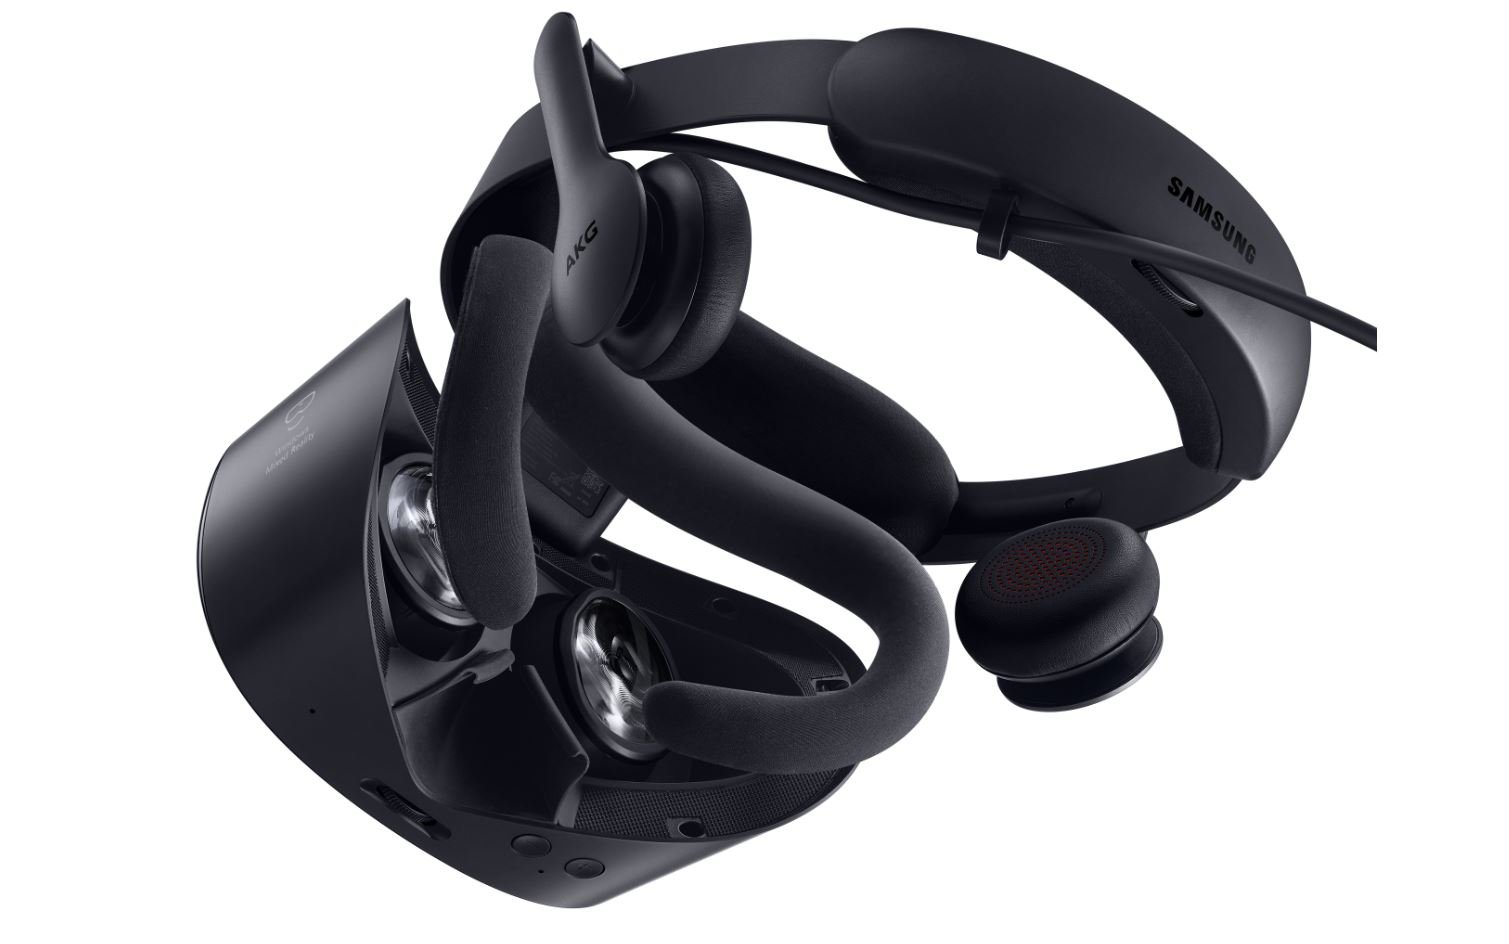 Upozornenie na ponuku: Náhlavná súprava Samsung HMD Odyssey+ VR je teraz k dispozícii len za 229 dolárov